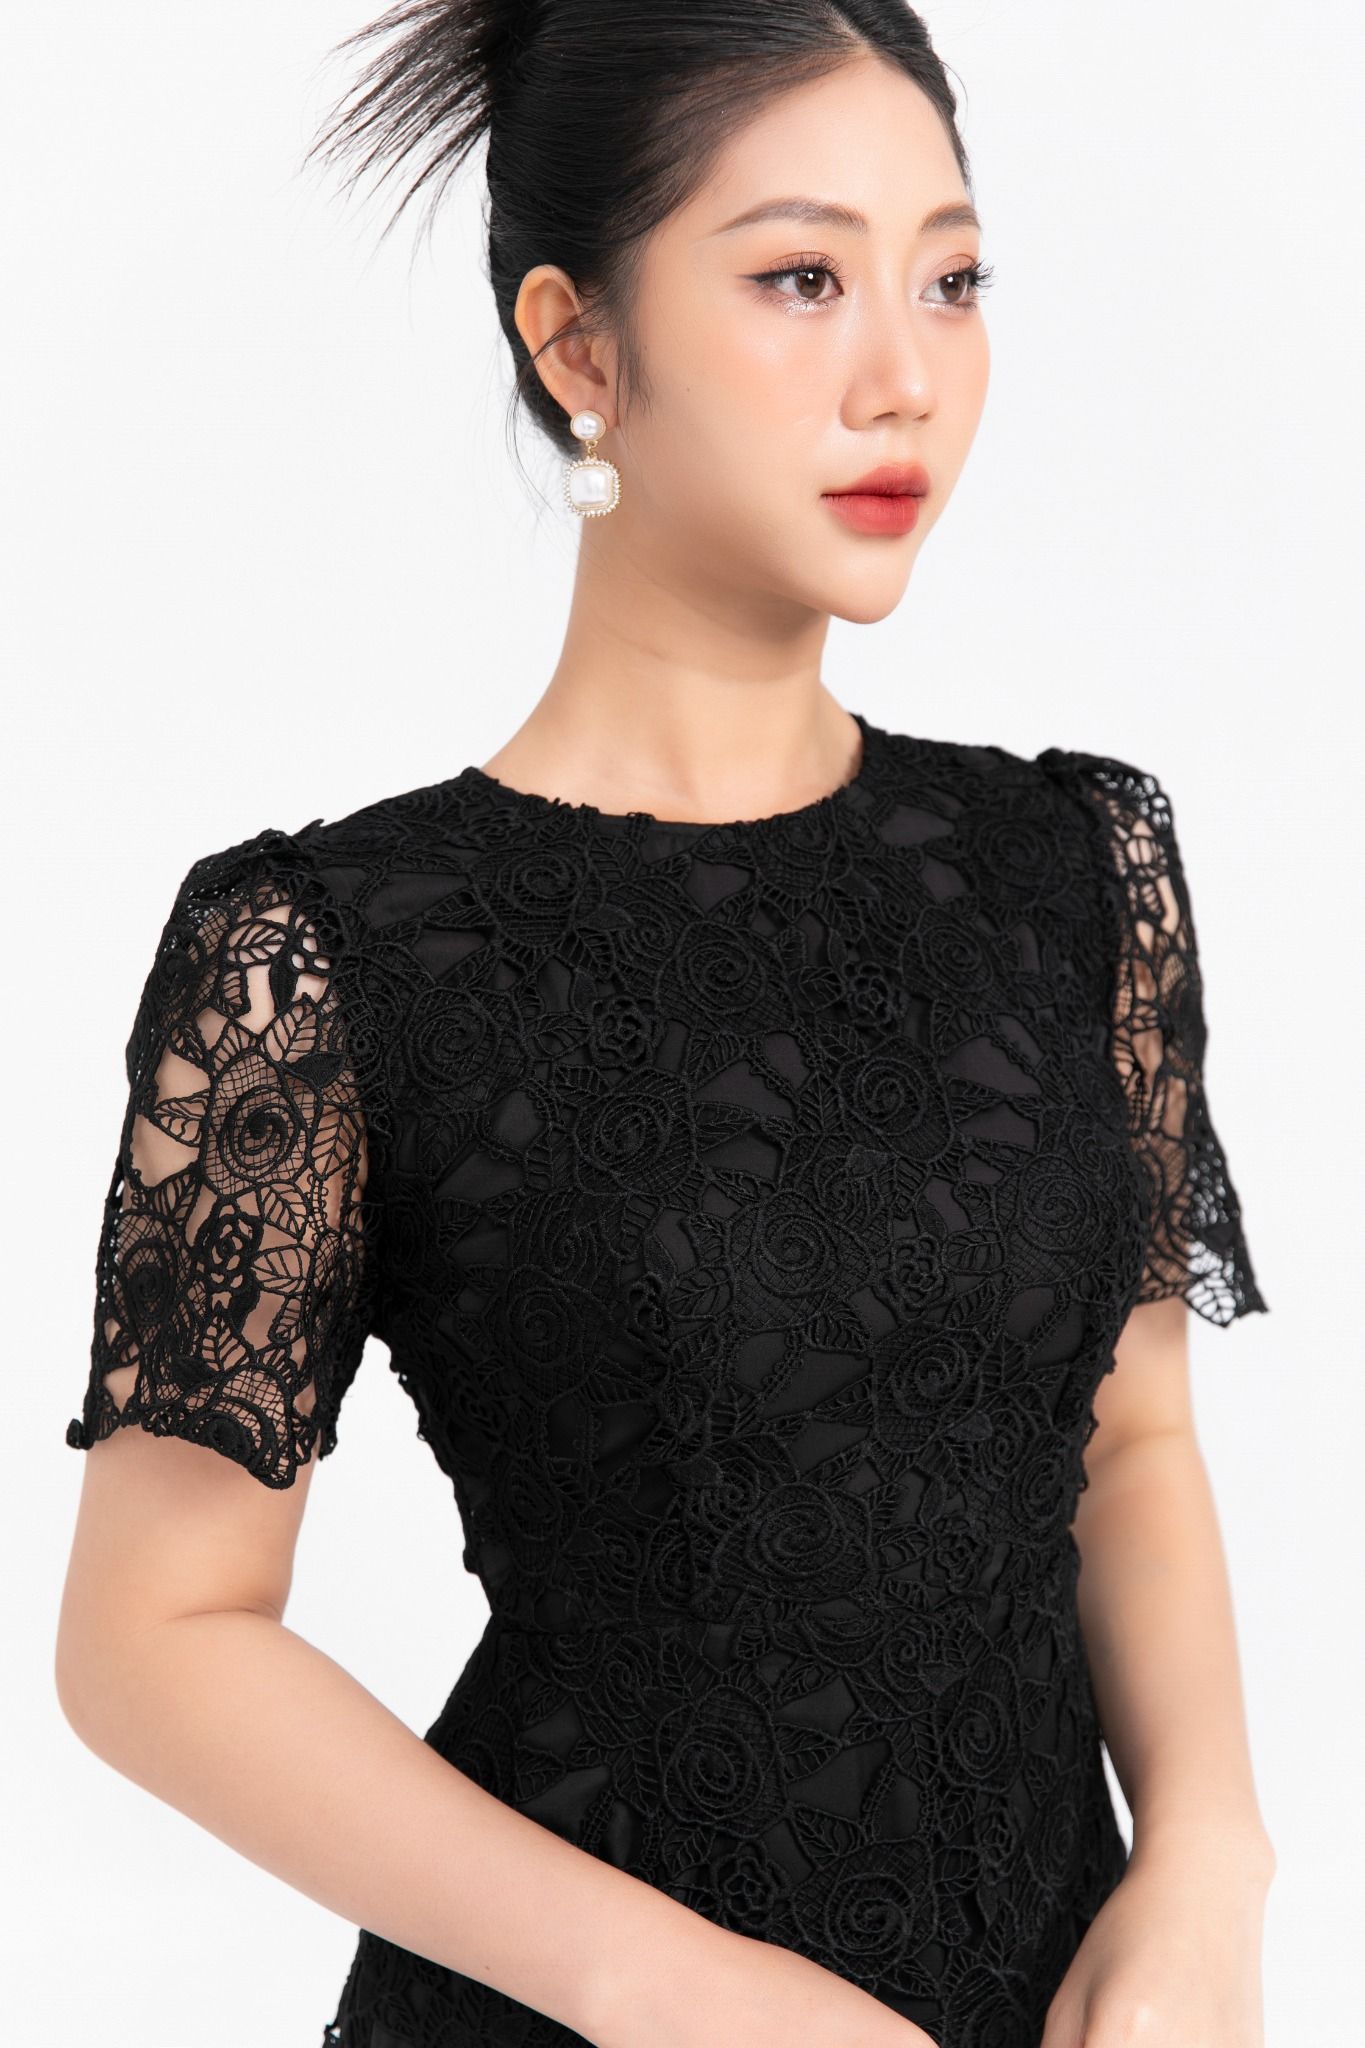 Váy đầm dạ hội phối ren Hàn Quốc đẹp, cao cấp, sang trọng 2016